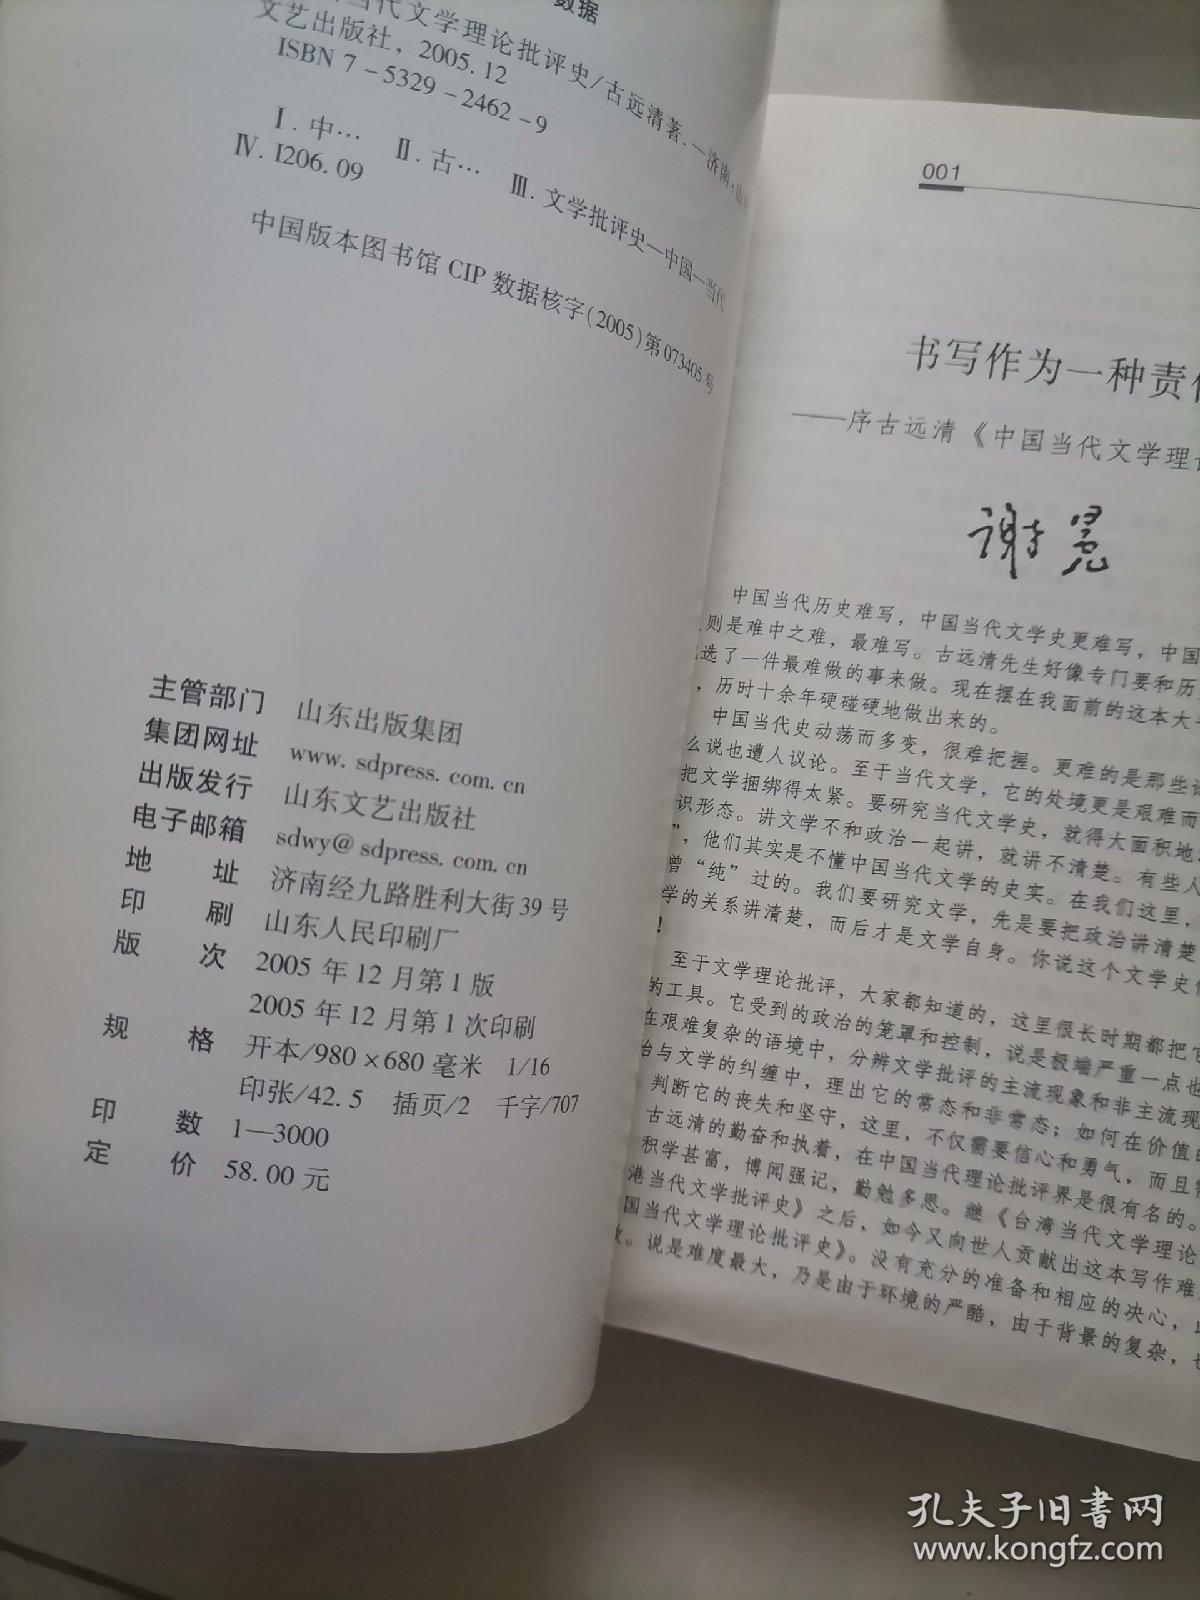 中国当代文学理论批评史:1949-1989大陆部分